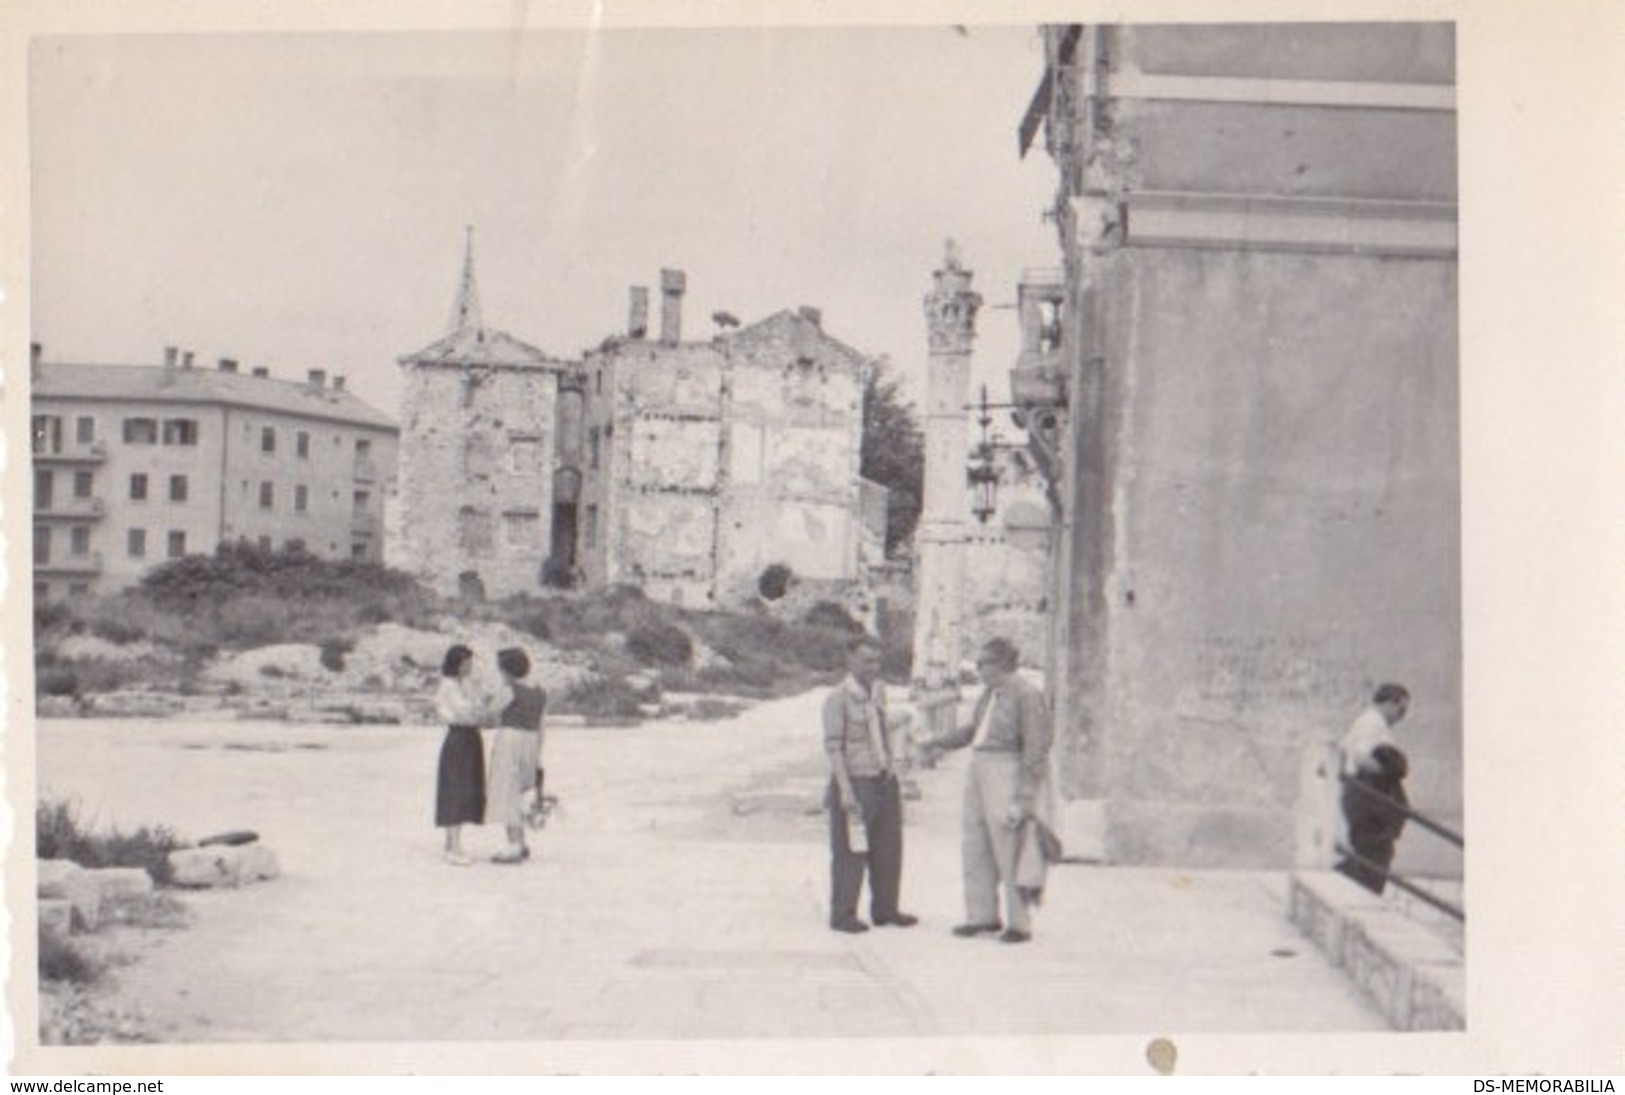 Zadar After WWII Bombing - Croatia